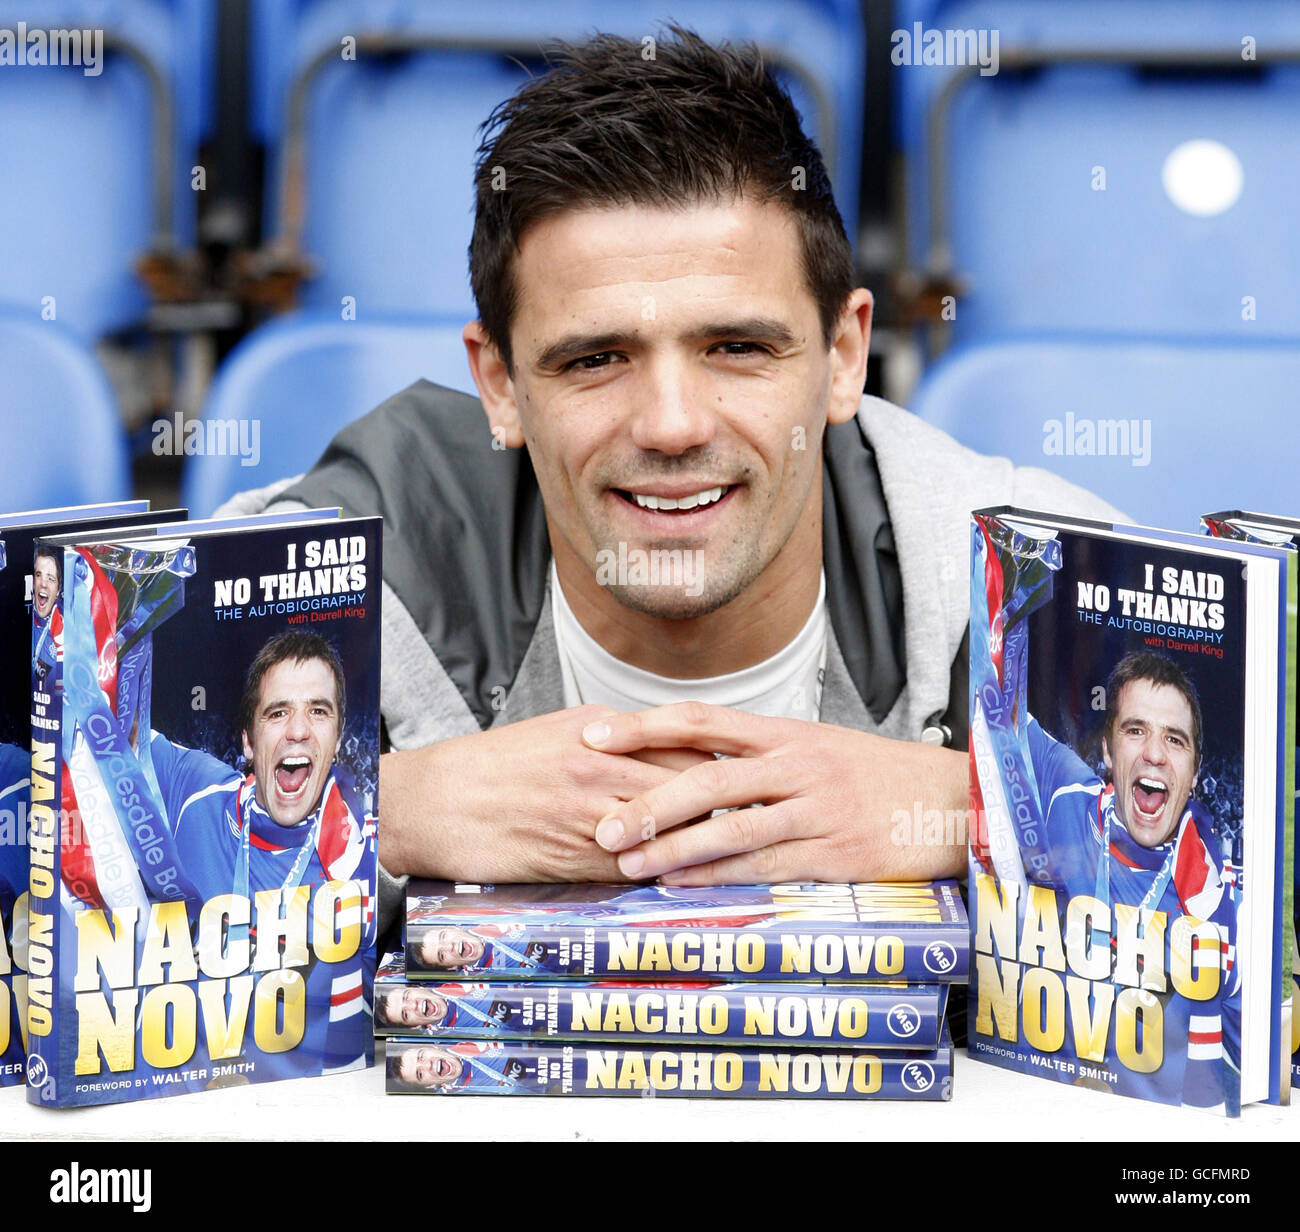 Fußball - Nacho Novo Photocall - Ibrox Stadium. Nacho Novo von den Rangers veröffentlicht sein Buch „I Said No Thanks“ im Ibrox Stadium, Glasgow. Stockfoto